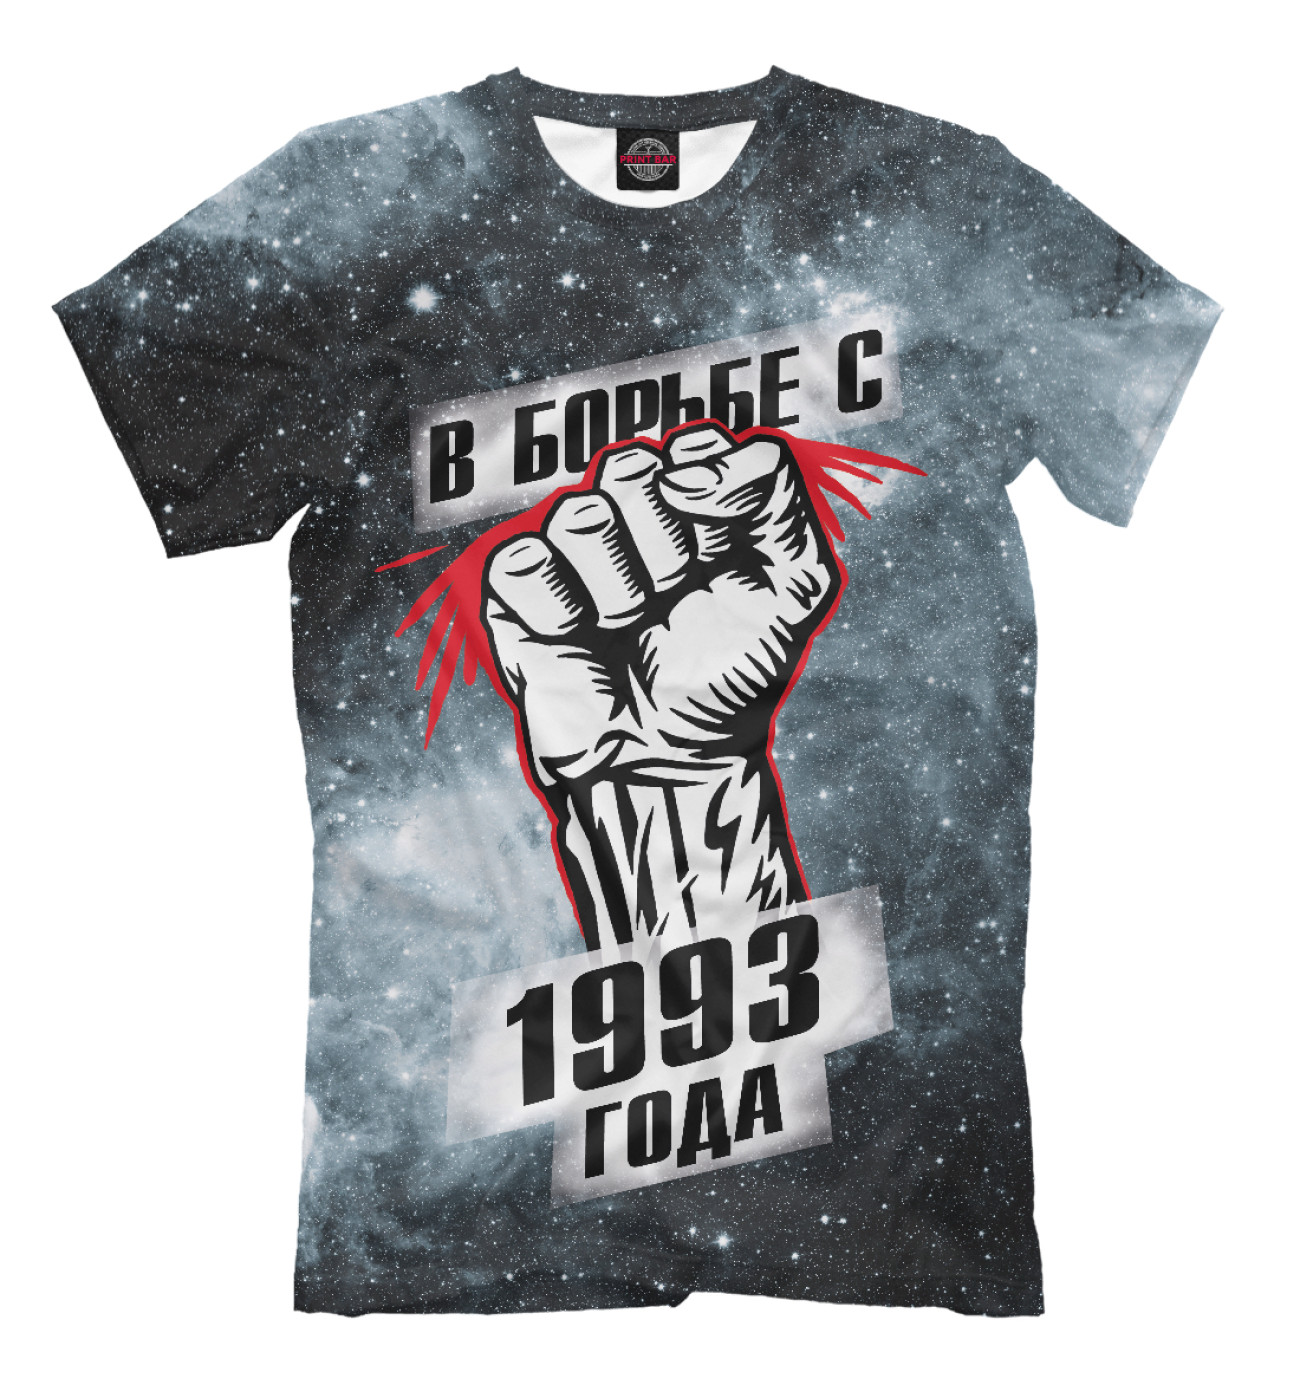 Мужская Футболка В борьбе с 1993 года, артикул: DDT-456064-fut-2